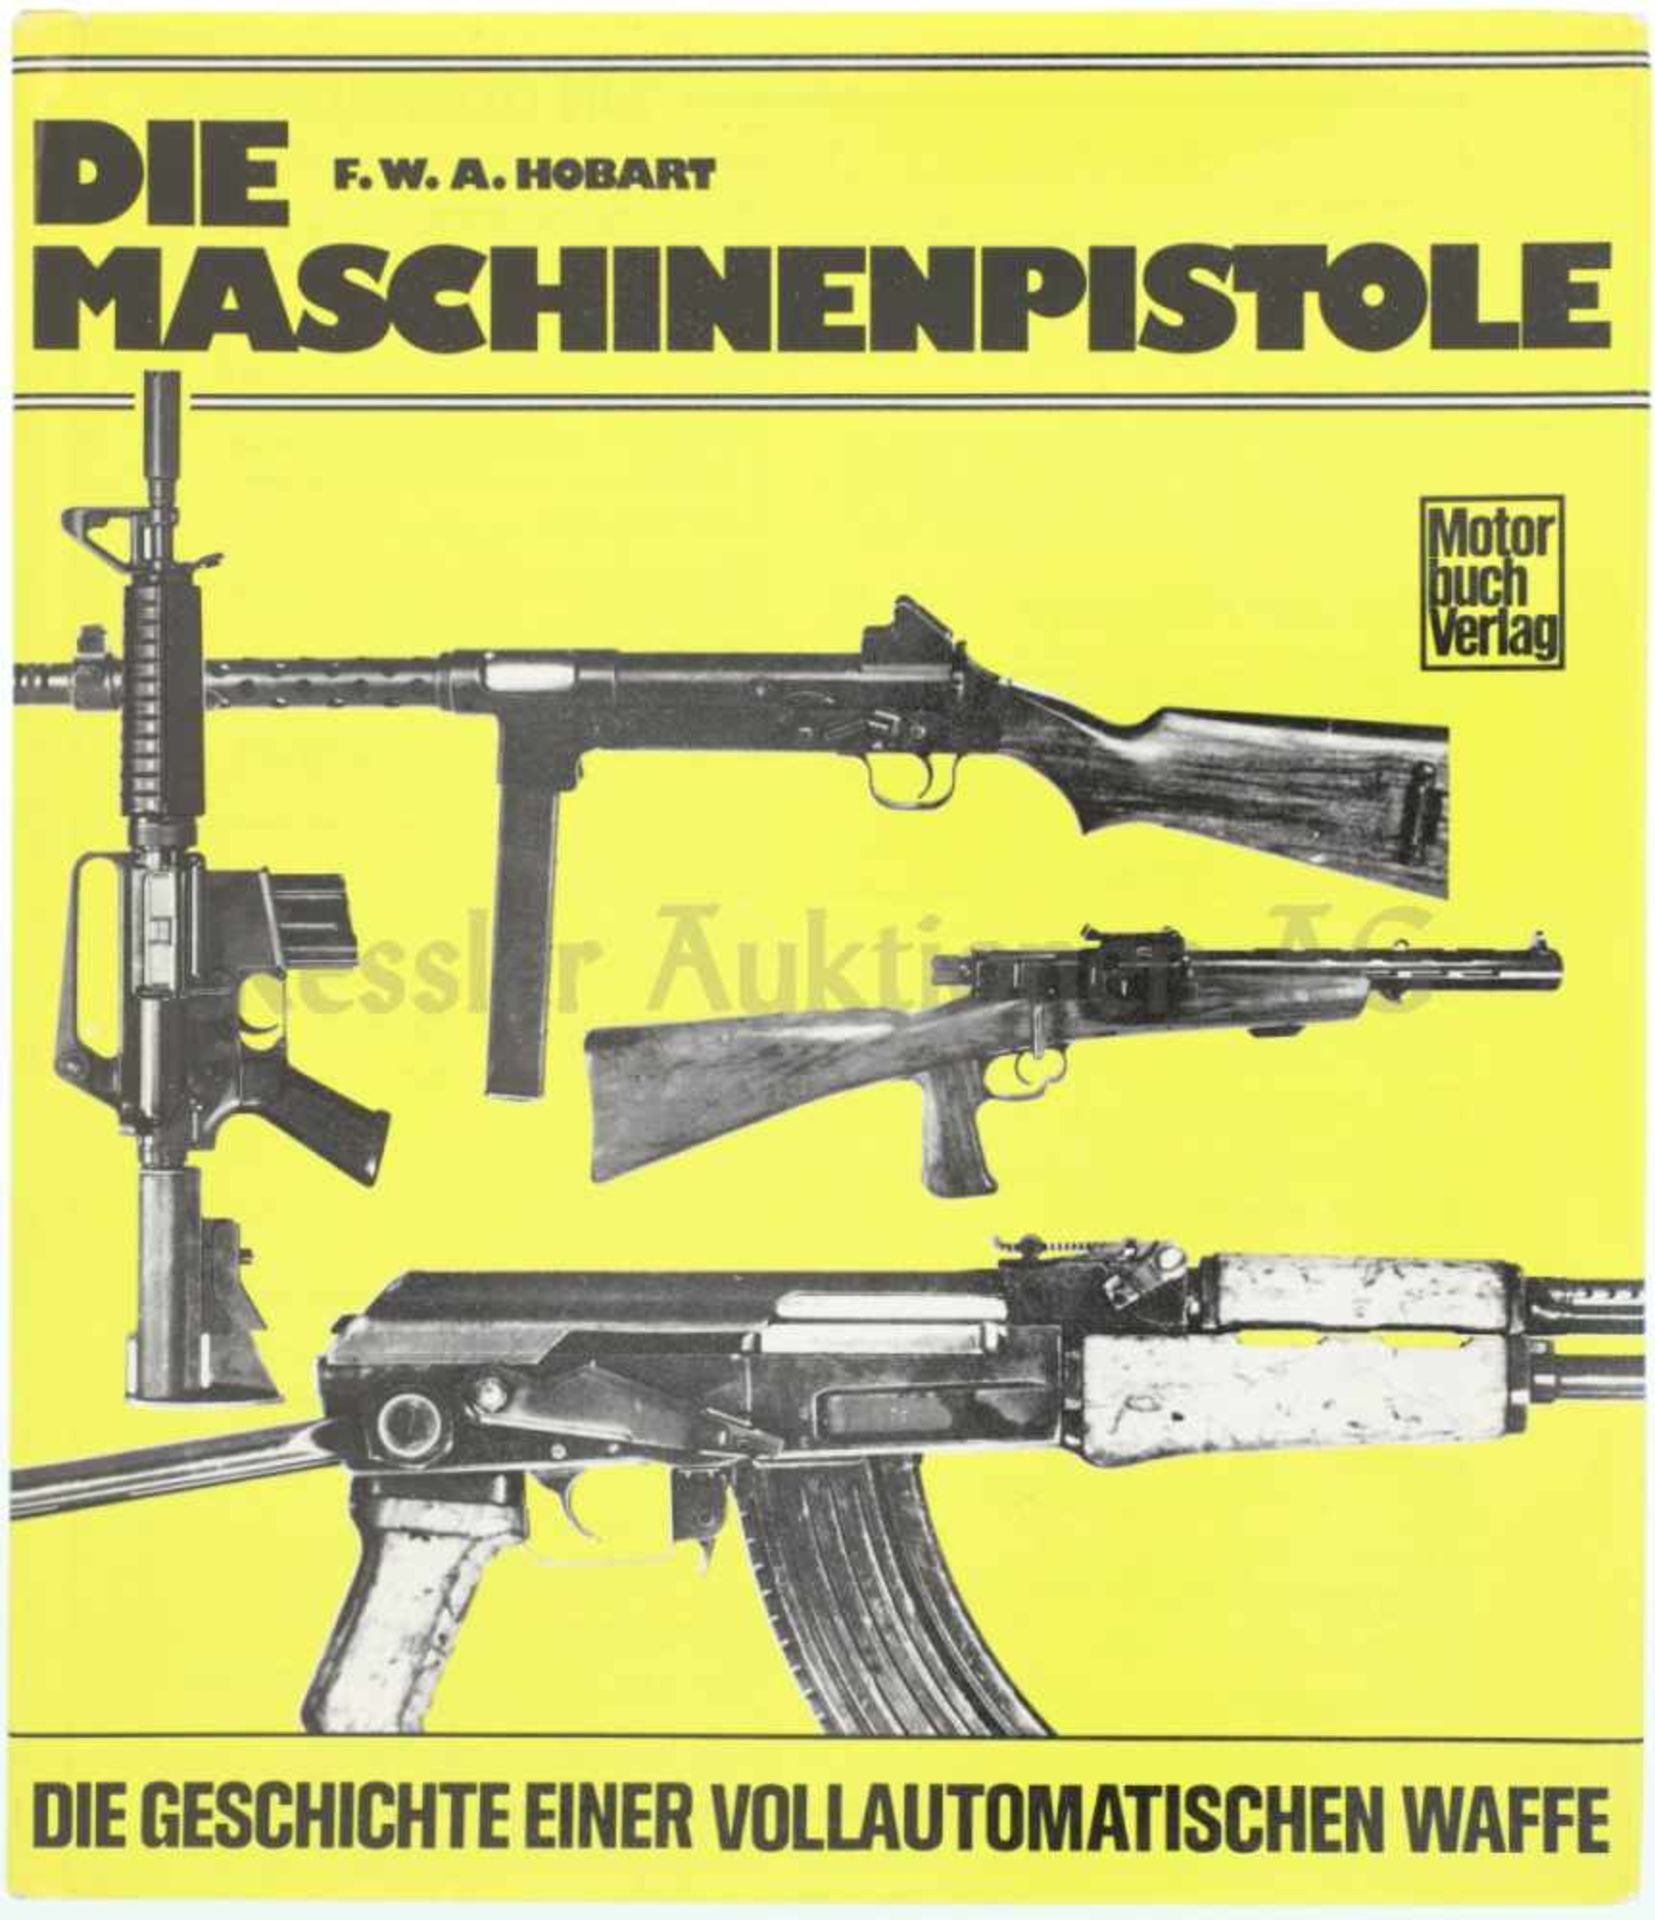 Die Maschinenpistole, die Geschichte einer vollautomatischen Waffe Autor F.W.A. Hobart, Stuttgart